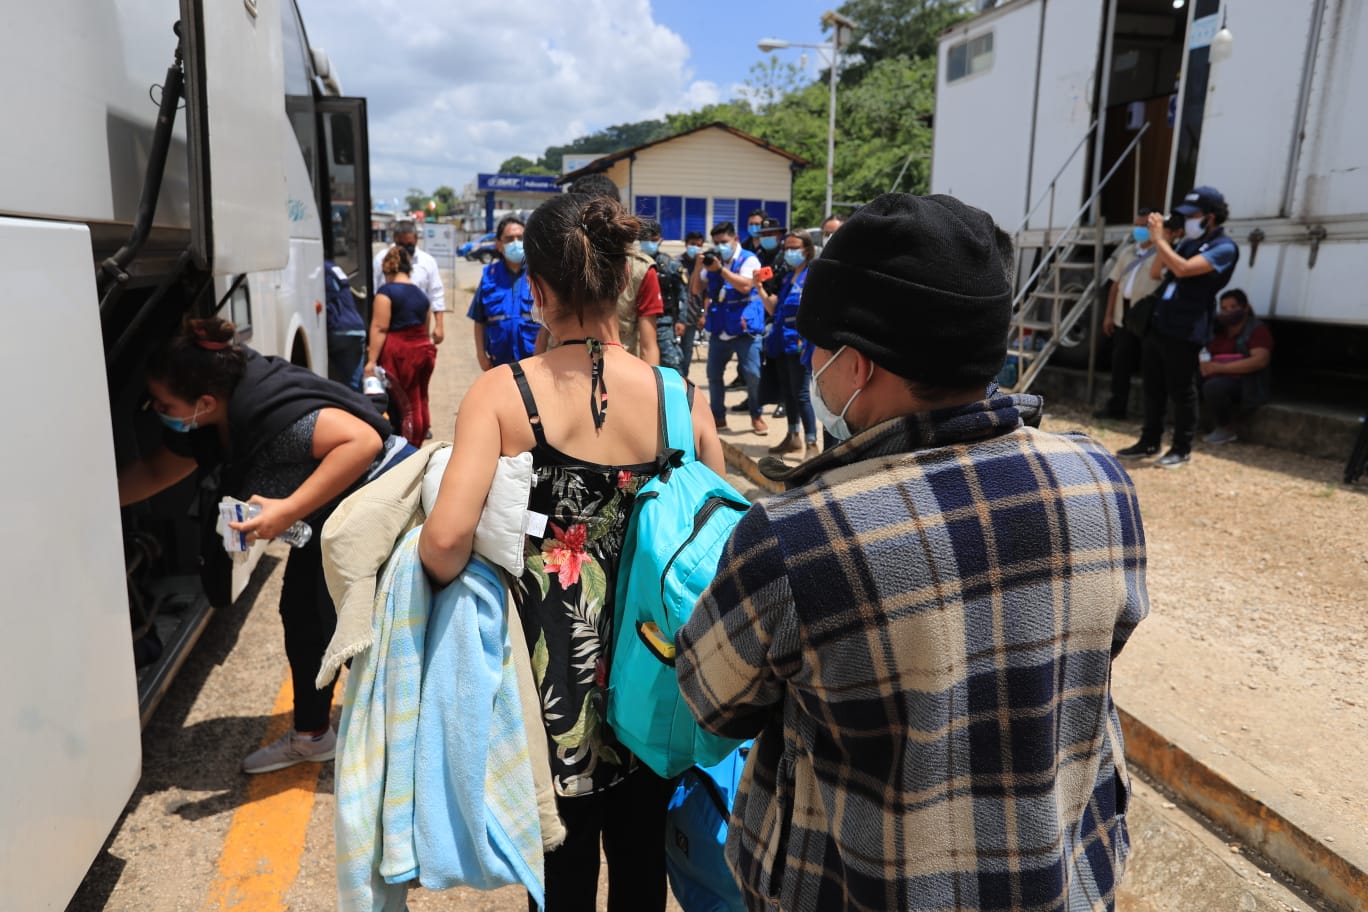 Decenas de migrantes centroamericanos llegan cada al paso fronterizo El Ceibo, en Petén, deportados de Estados Unidos vía México. (Foto Prensa Libre: Byron García)